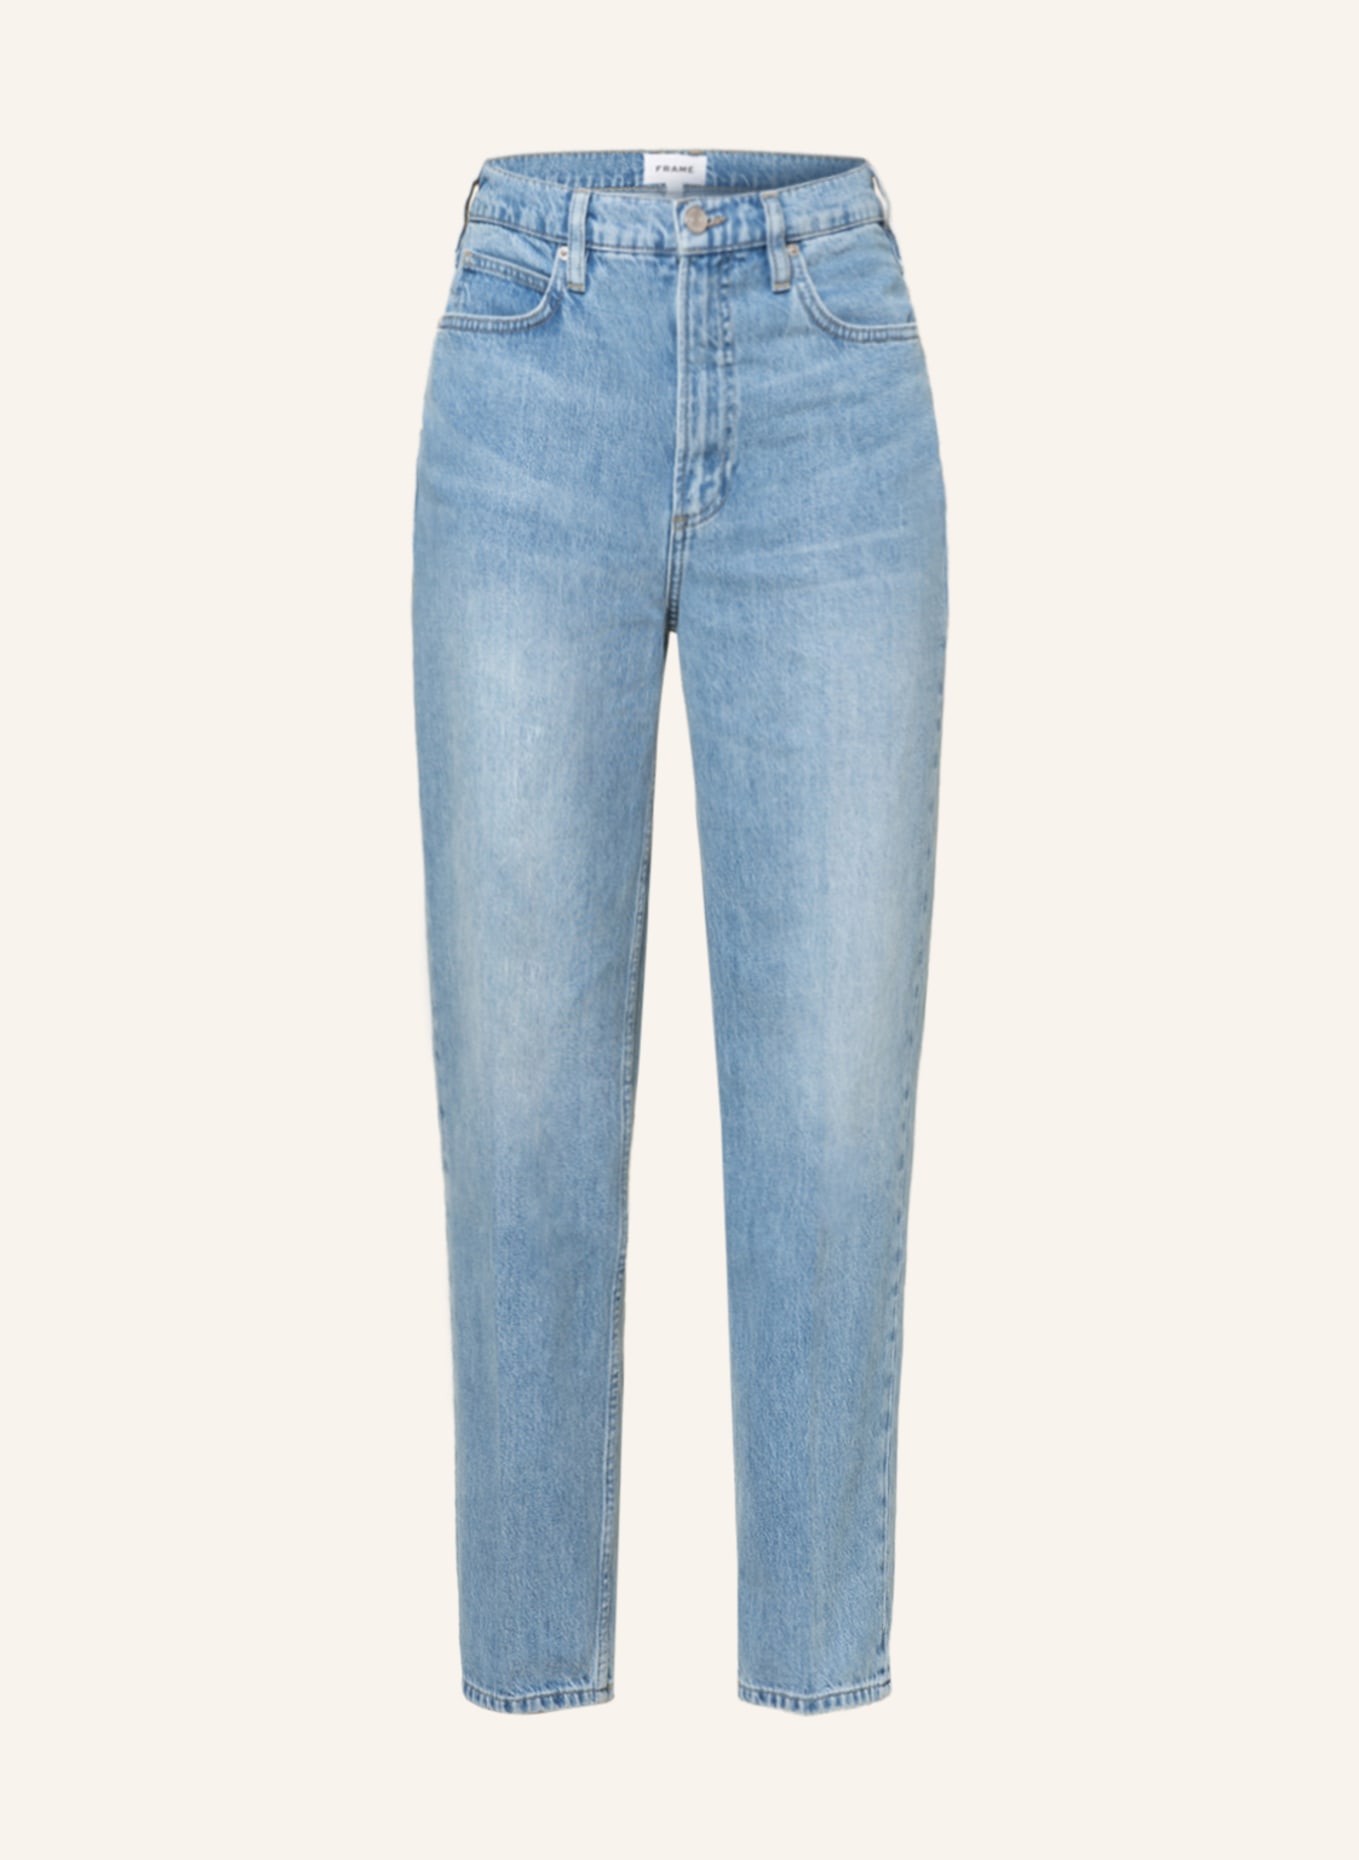 FRAME DENIM Straight Jeans LE HIGH 'N' TIGHT, Farbe: ZONA ZONA (Bild 1)